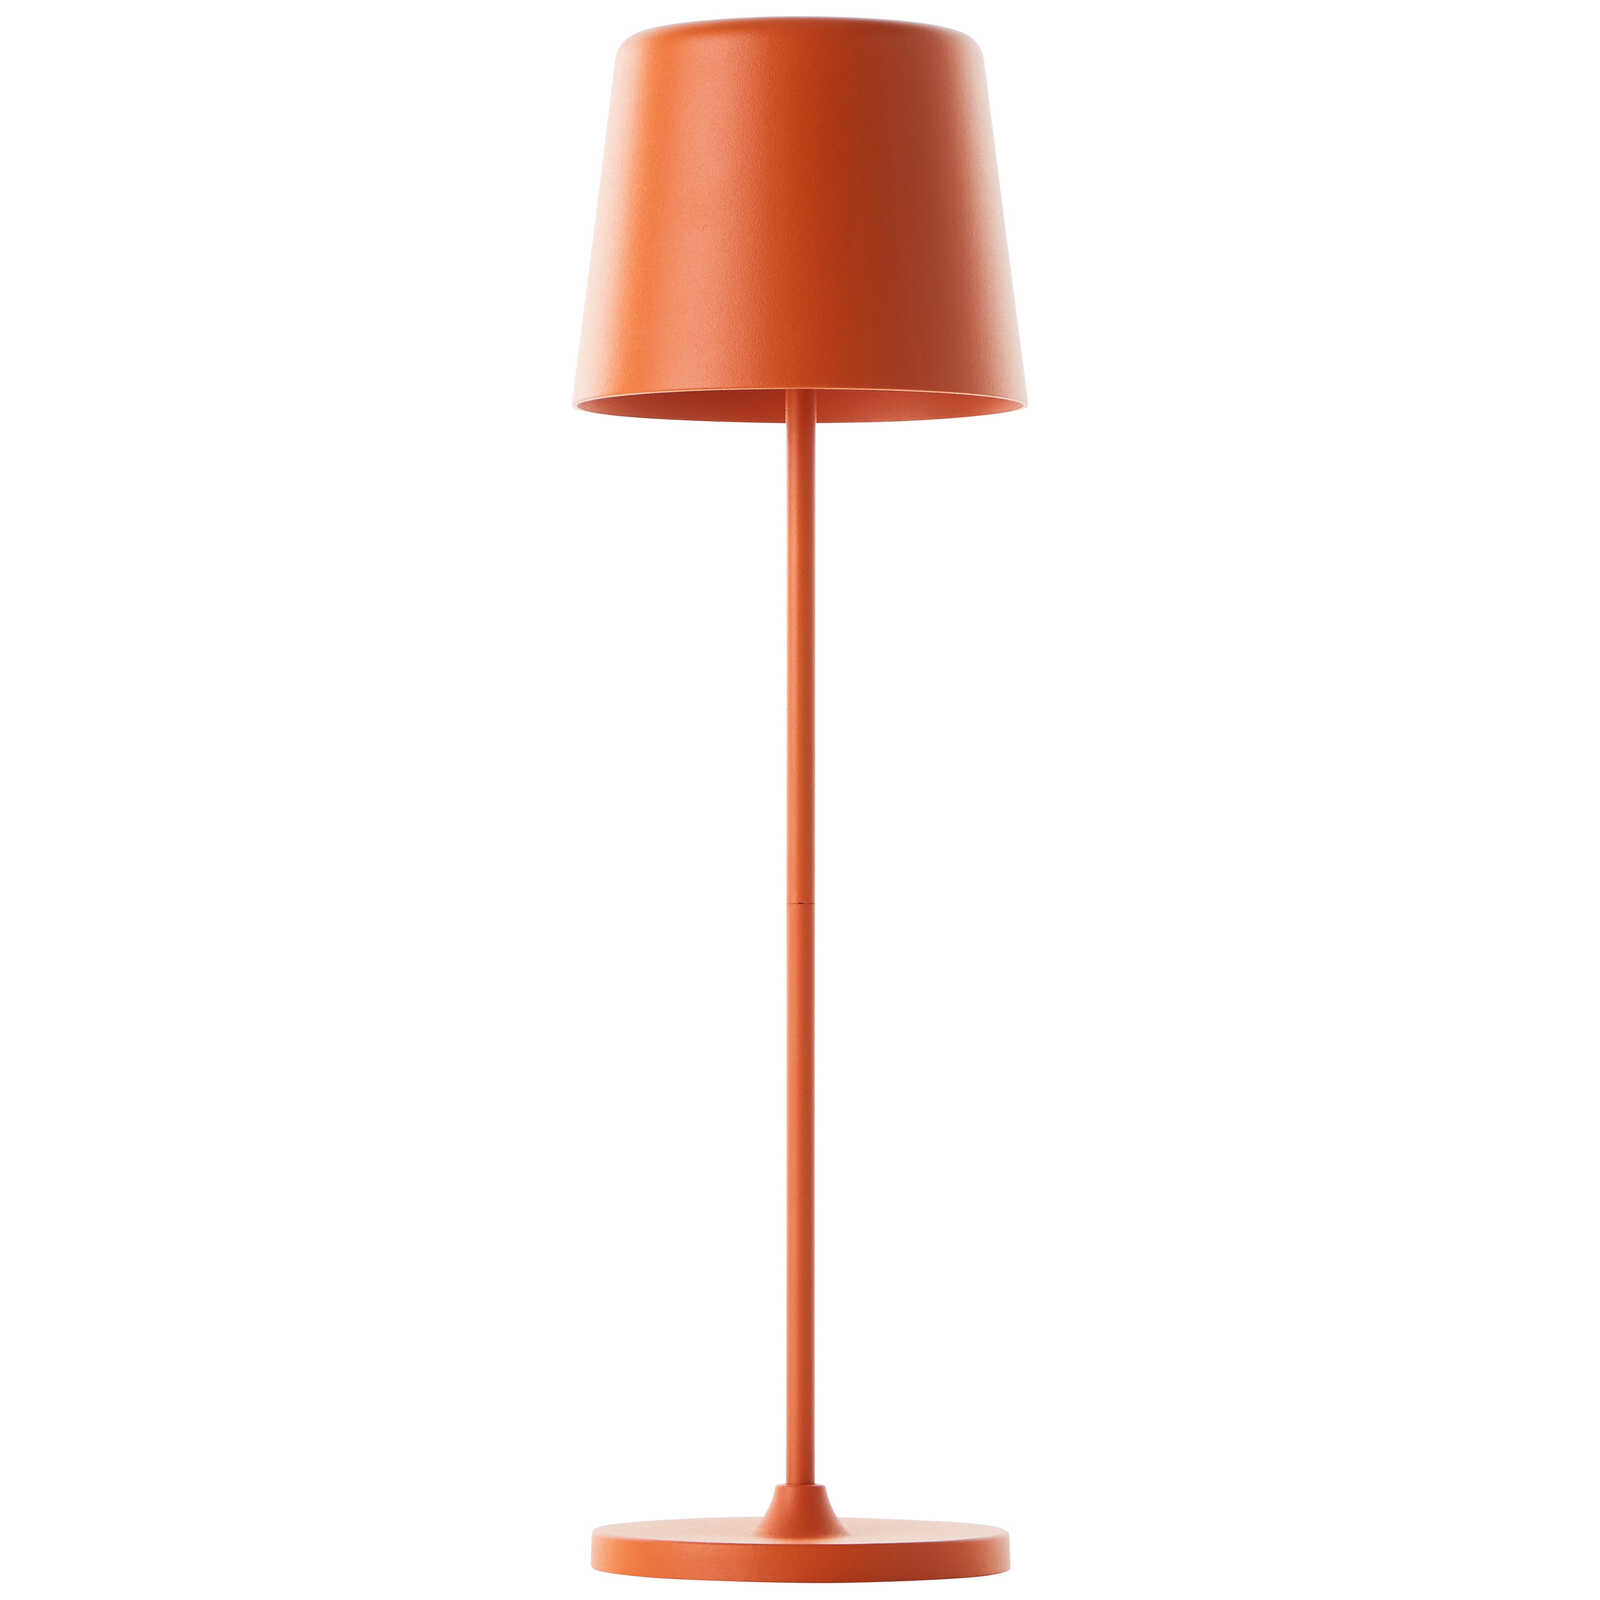             Metalen tafellamp - Cosy 7 - Oranje
        